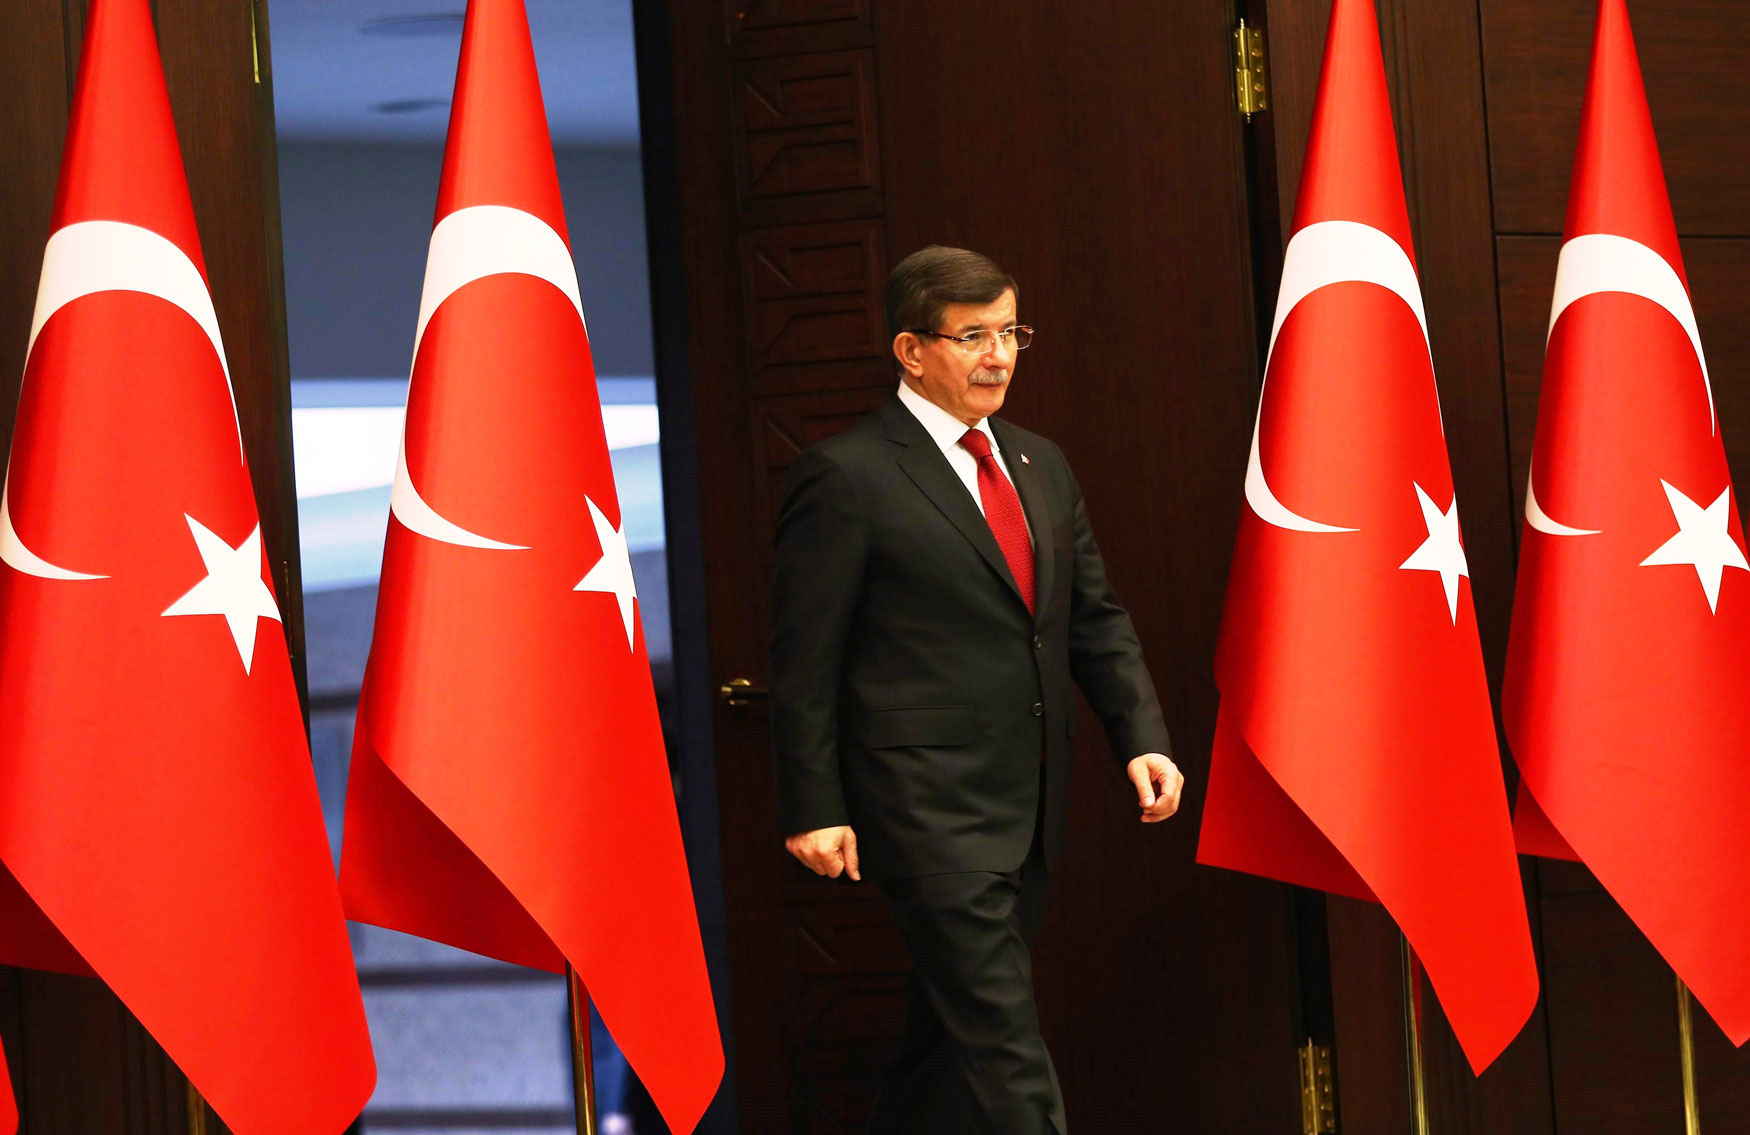 أحمد داوود أغلو برز اسمه كرجل المرحلة القادمة مع تأزم الوضع في تركيا سياسيا واقتصاديا